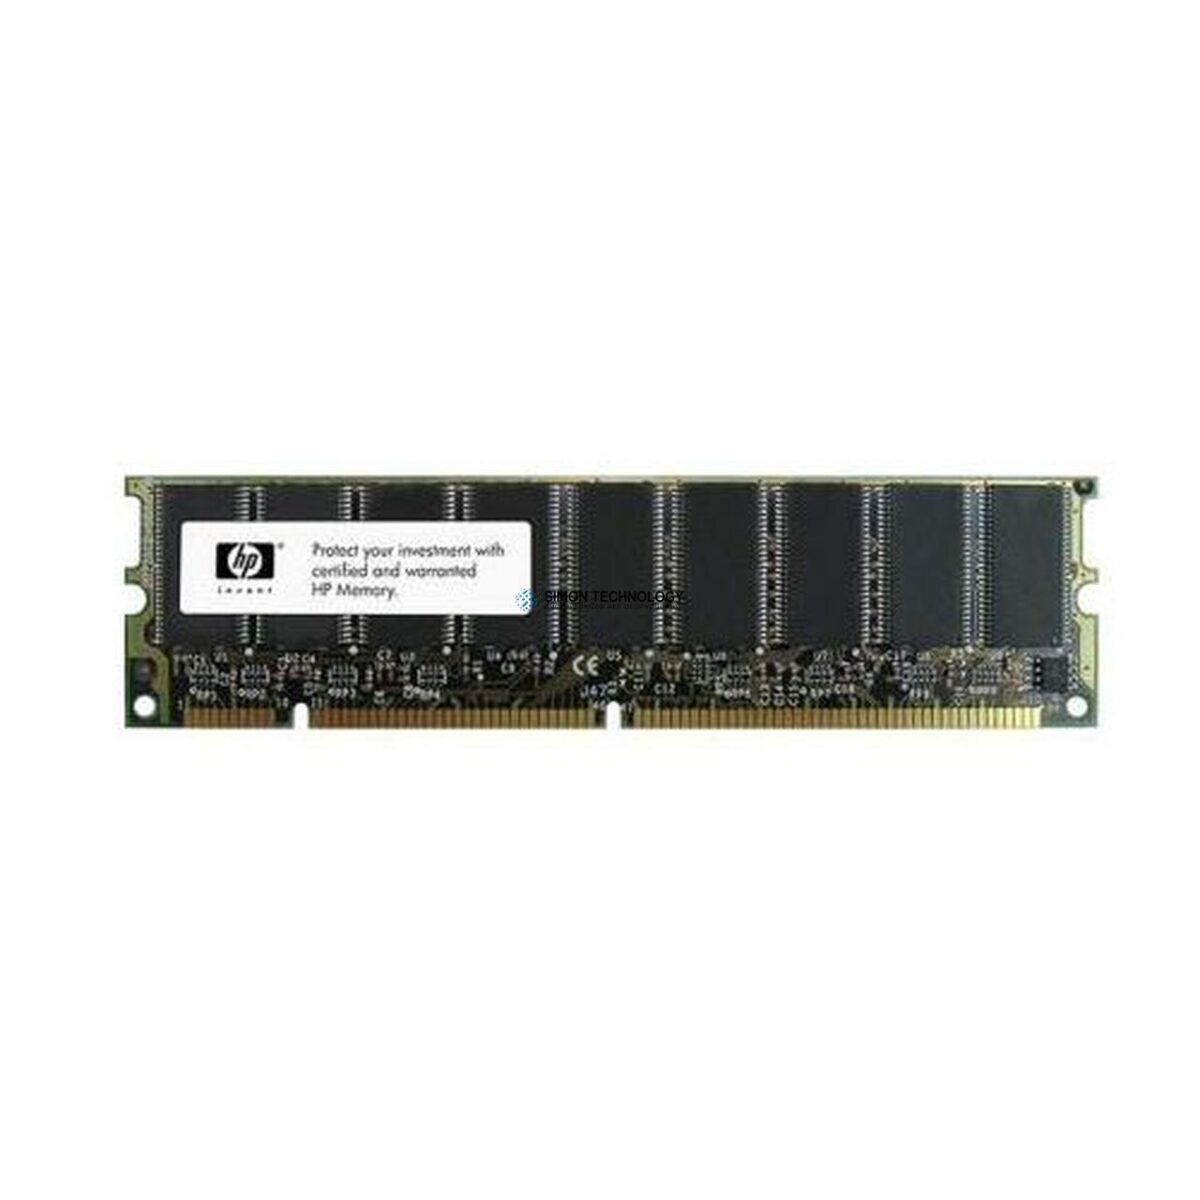 Оперативная память HPE Memory 1GB DIMM SDRAM PC133 (645105-001)